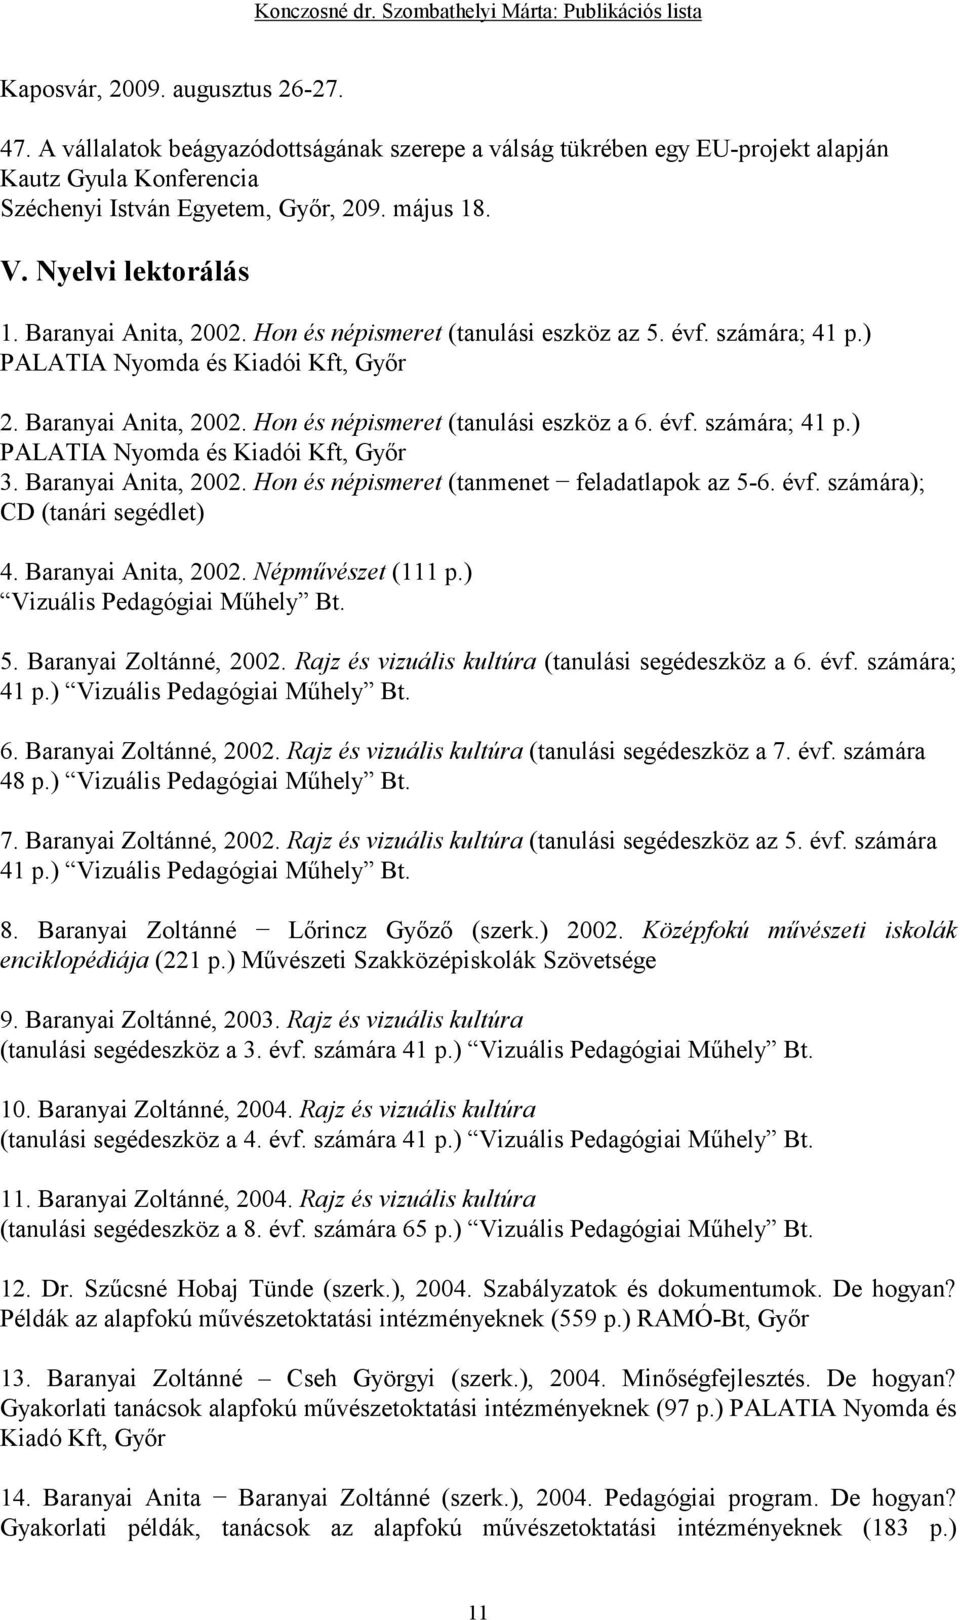 évf. számára; 41 p.) PALATIA Nyomda és Kiadói Kft, Gyır 3. Baranyai Anita, 2002. Hon és népismeret (tanmenet feladatlapok az 5-6. évf. számára); CD (tanári segédlet) 4. Baranyai Anita, 2002. Népmővészet (111 p.